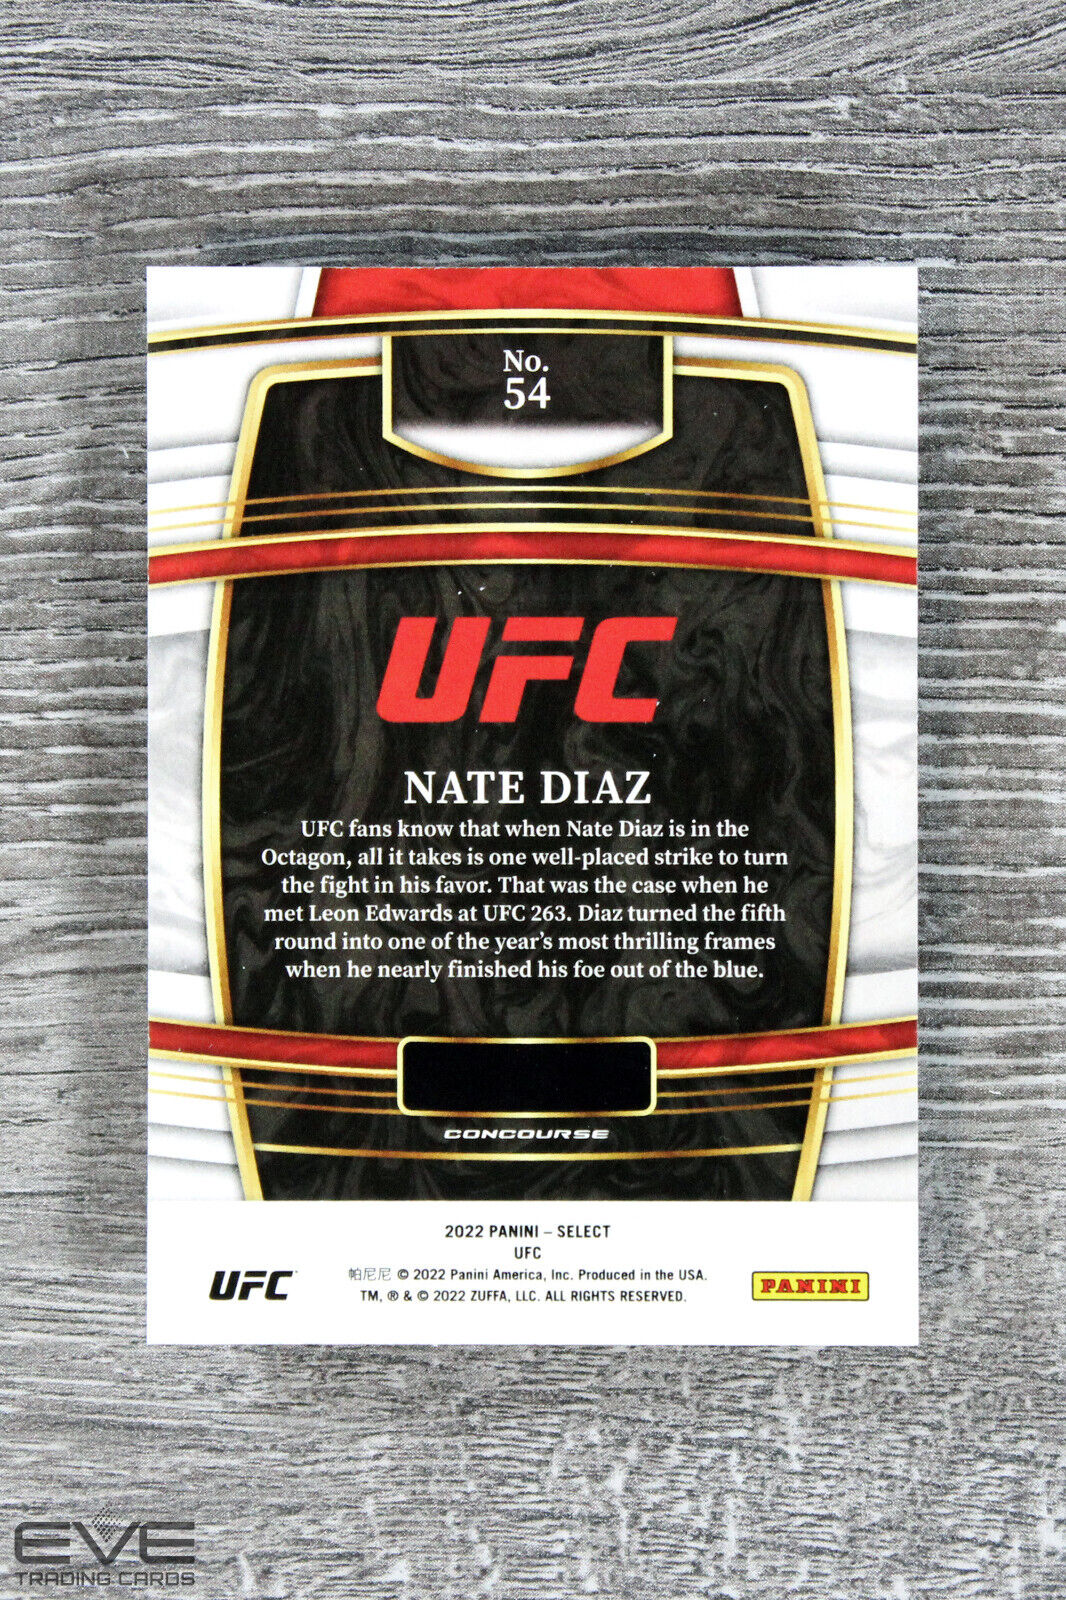 2022 Panini Select UFC Base Card #54 Nate Diaz - NM/M